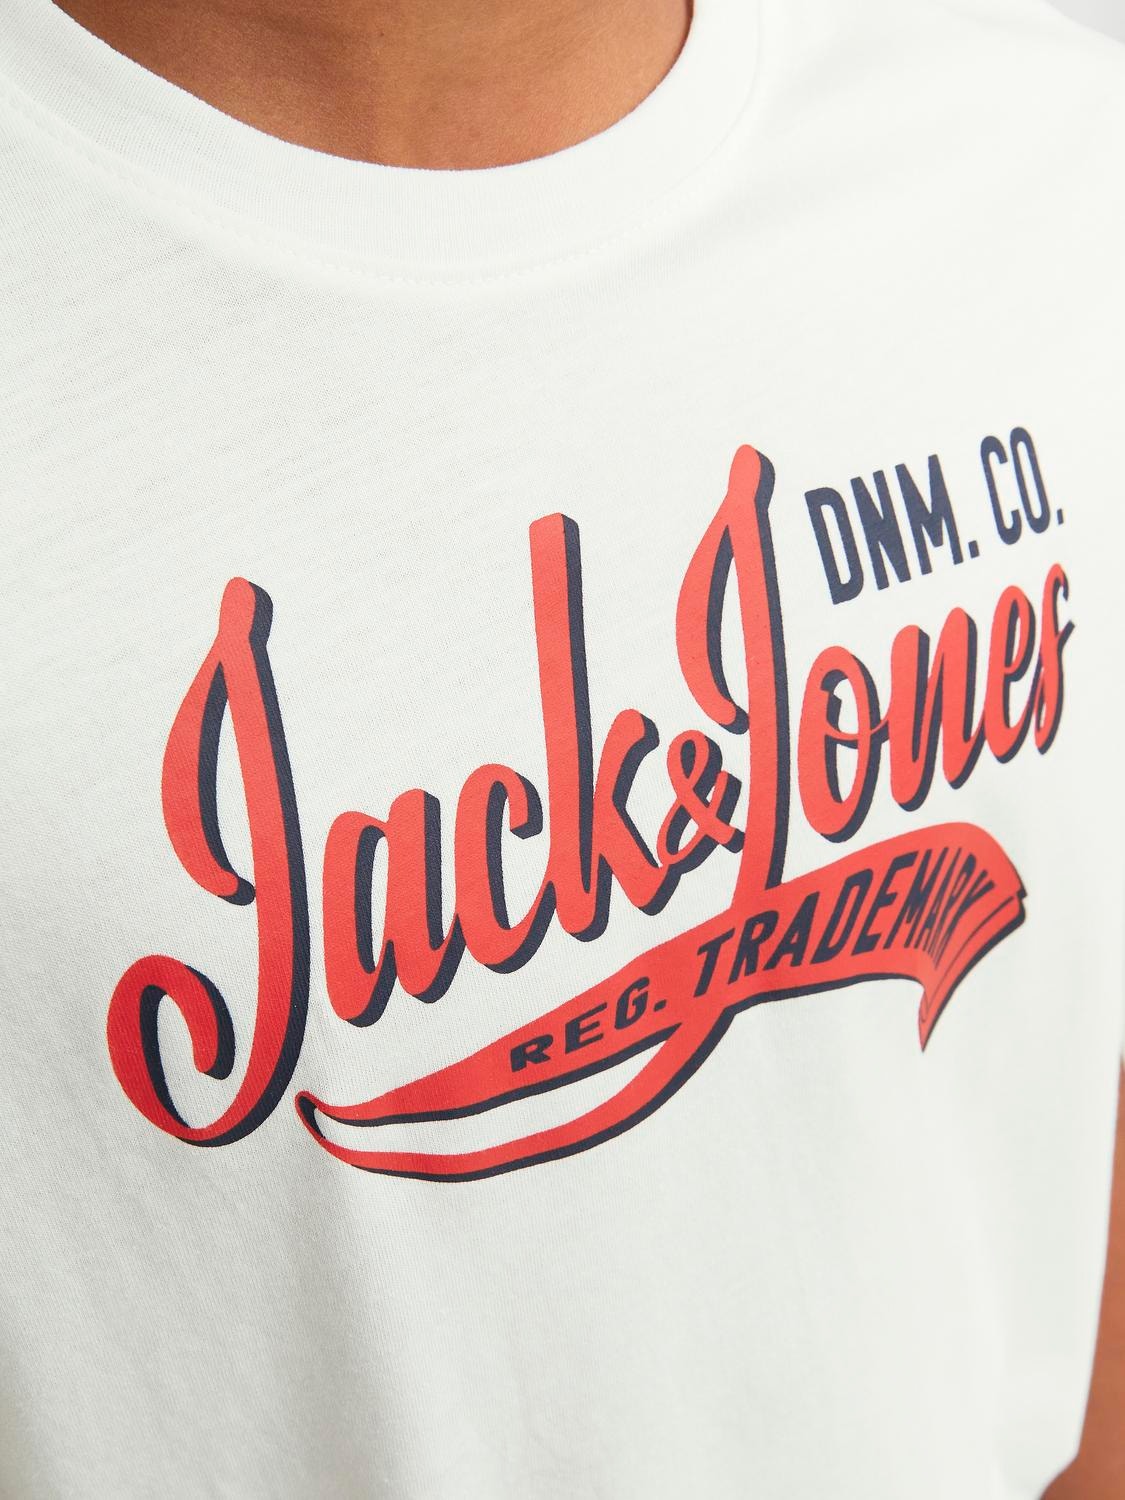 Jack & Jones T-shirt Imprimé Pour les garçons -Cloud Dancer - 12237367